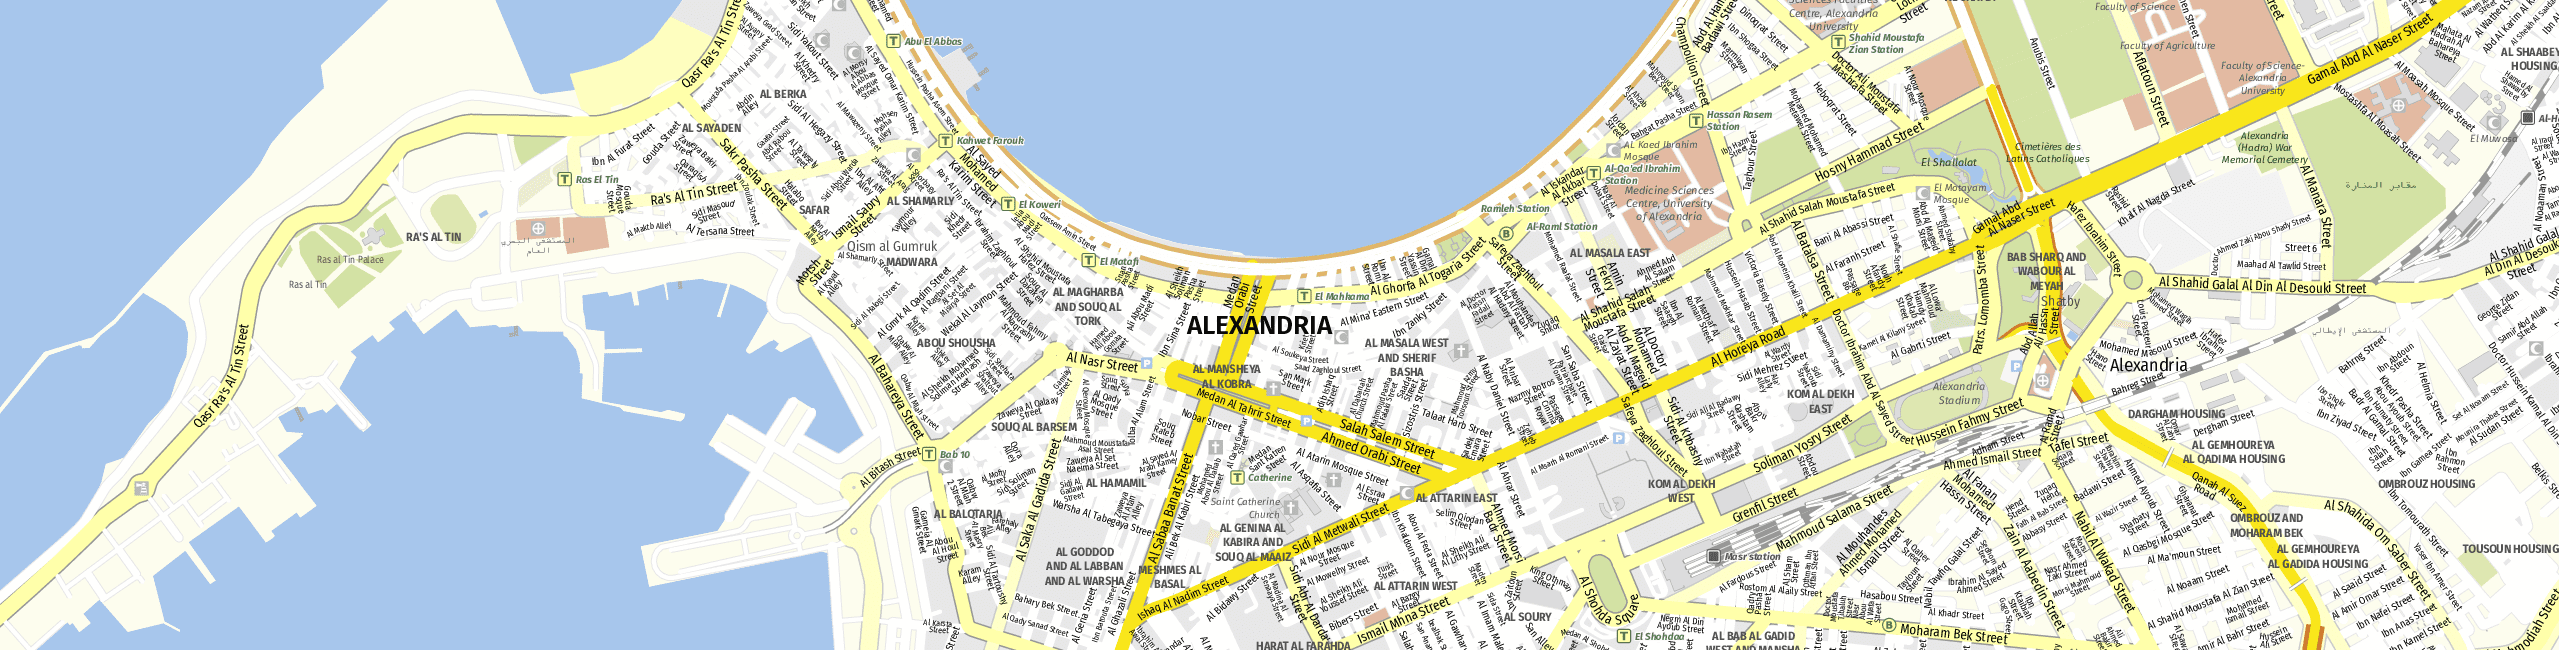 Stadtplan Alexandria zum Downloaden.